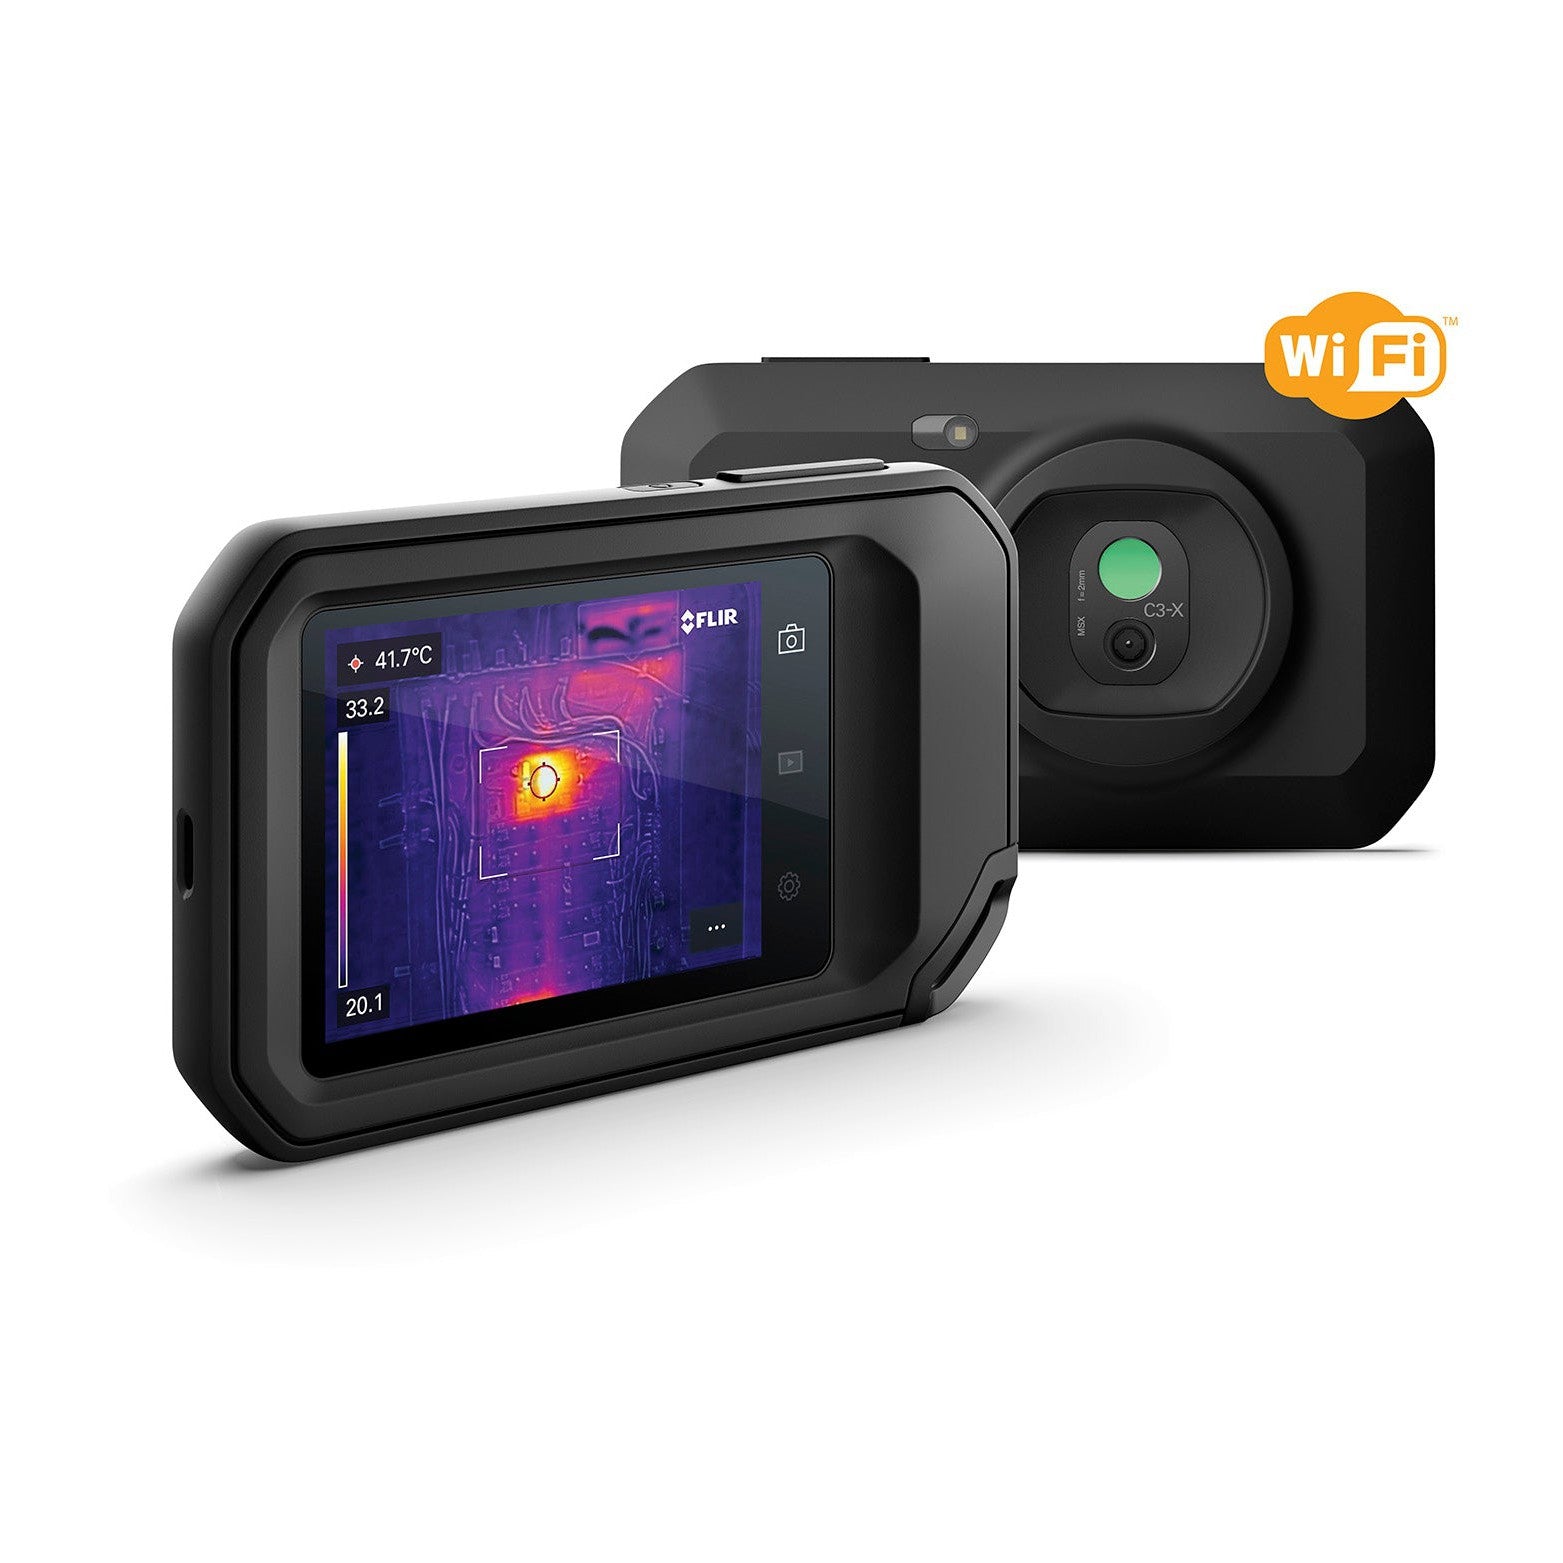 FLIR 'C3-X' Compact Thermal Camera